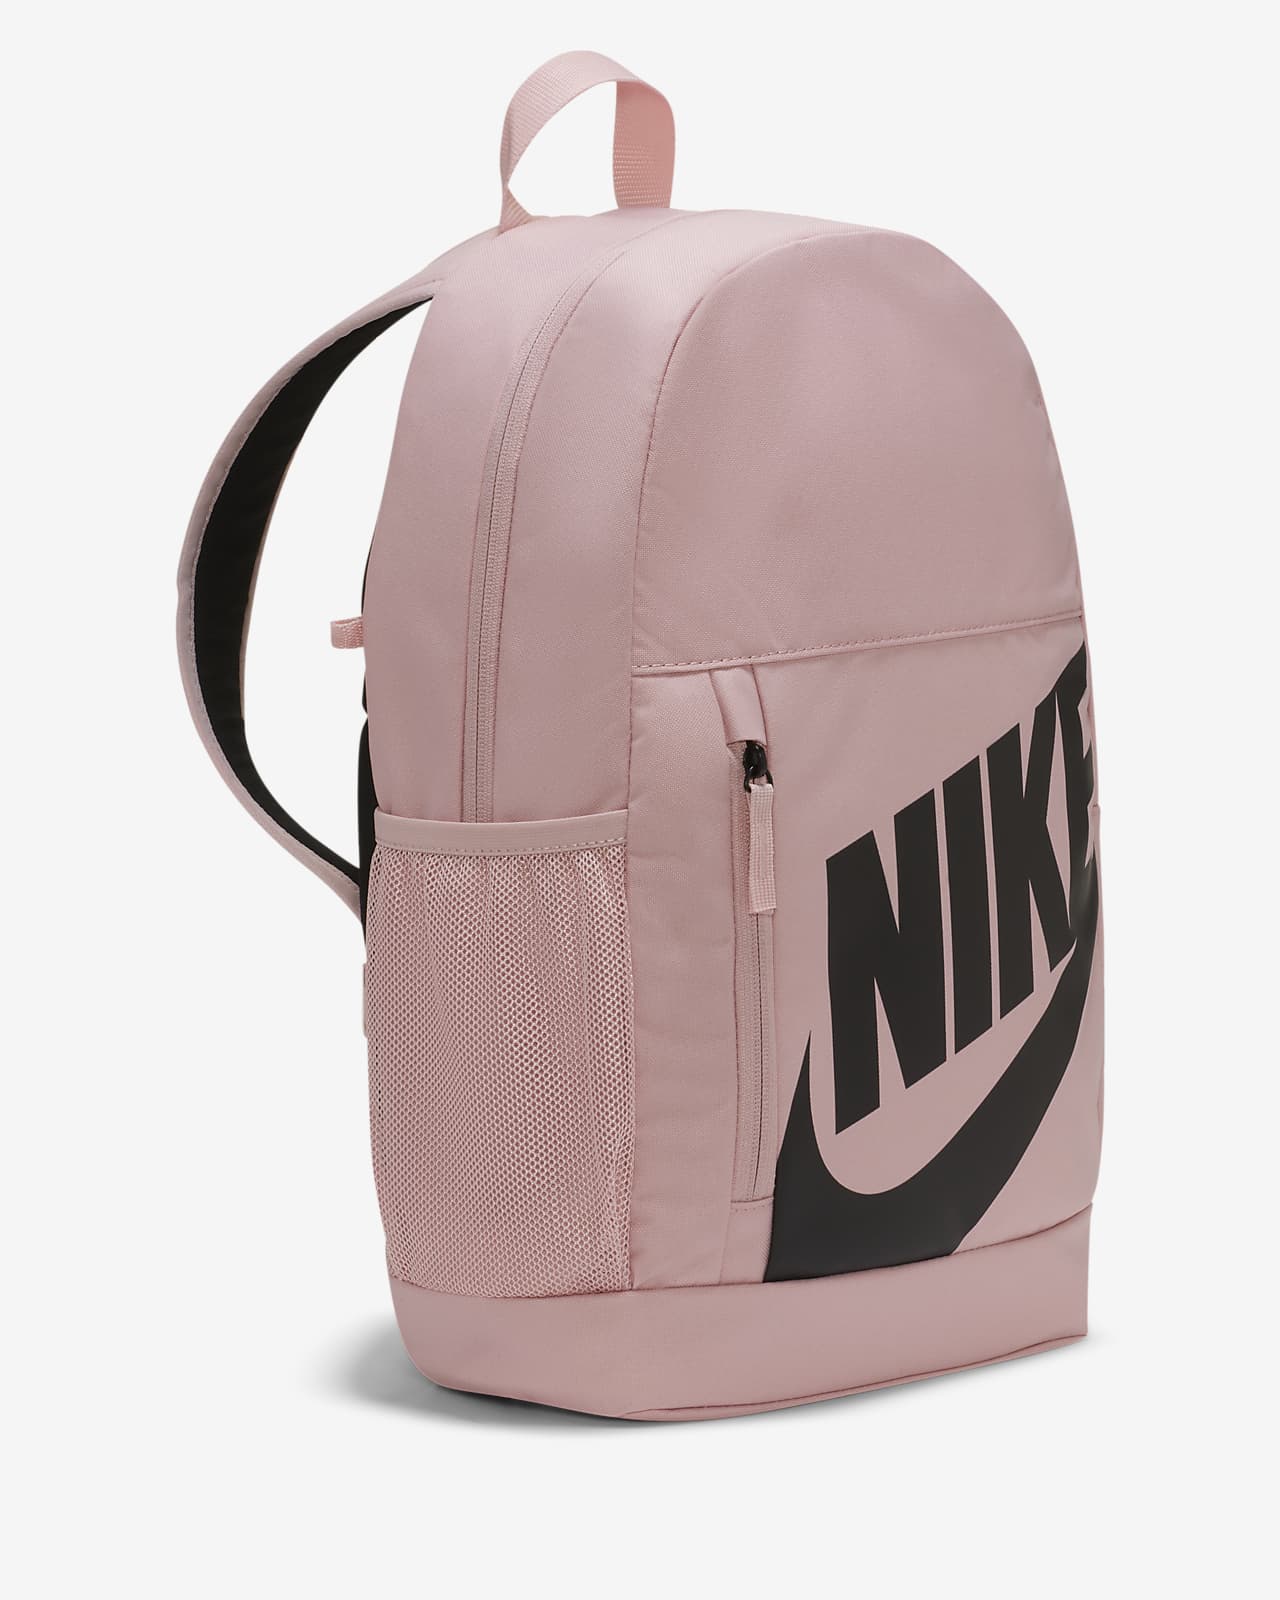 Nike Kids' Backpack. Nike IL